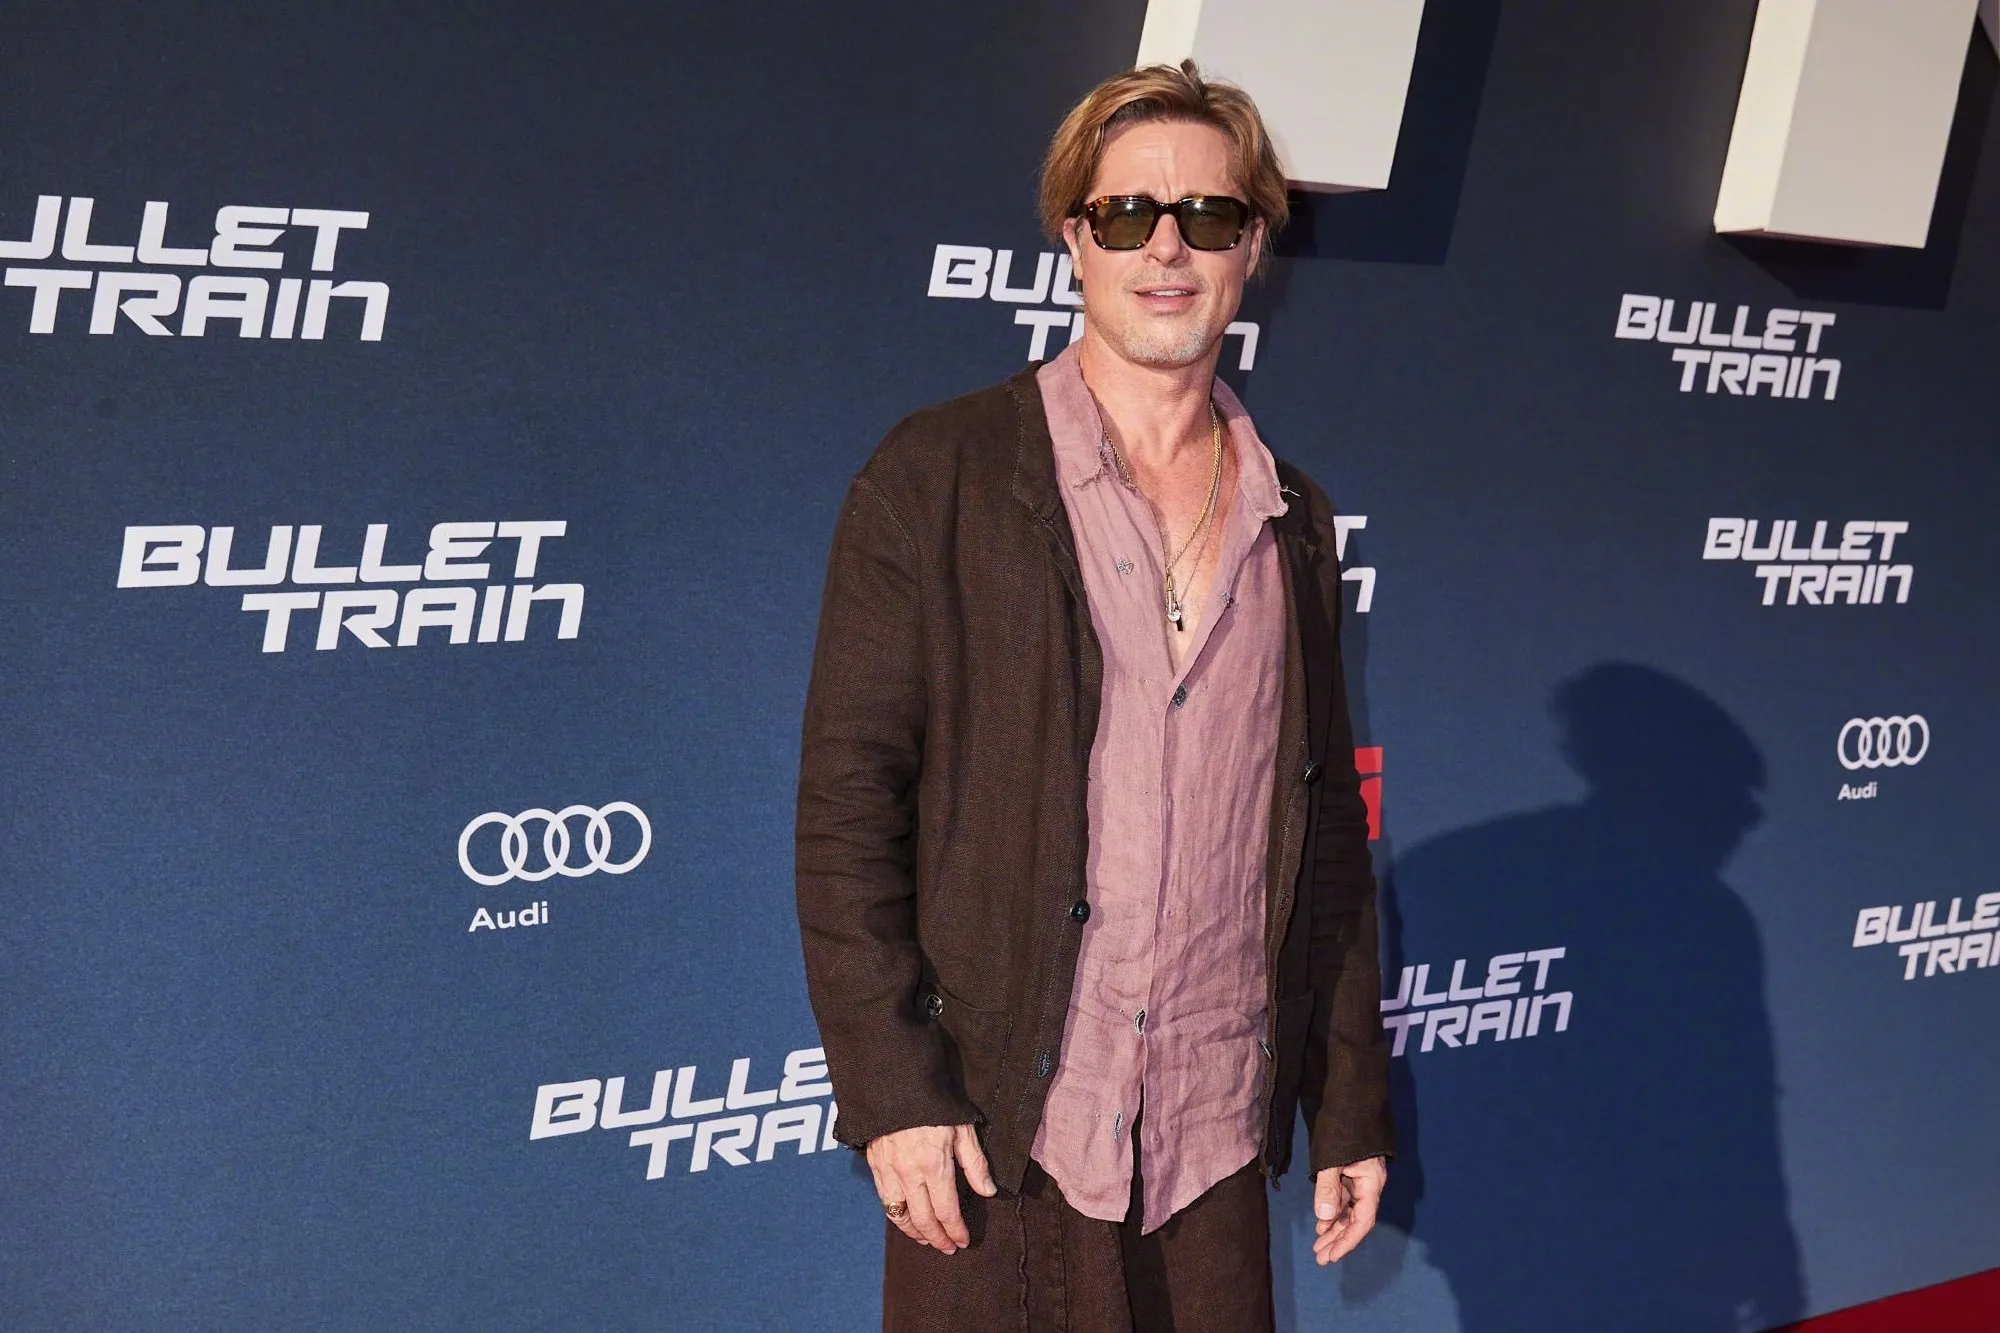 Brad Pitt, Joey King, Aaron Taylor-Johnson attend 'Bullet Train' premiere in Berlin | FMV6